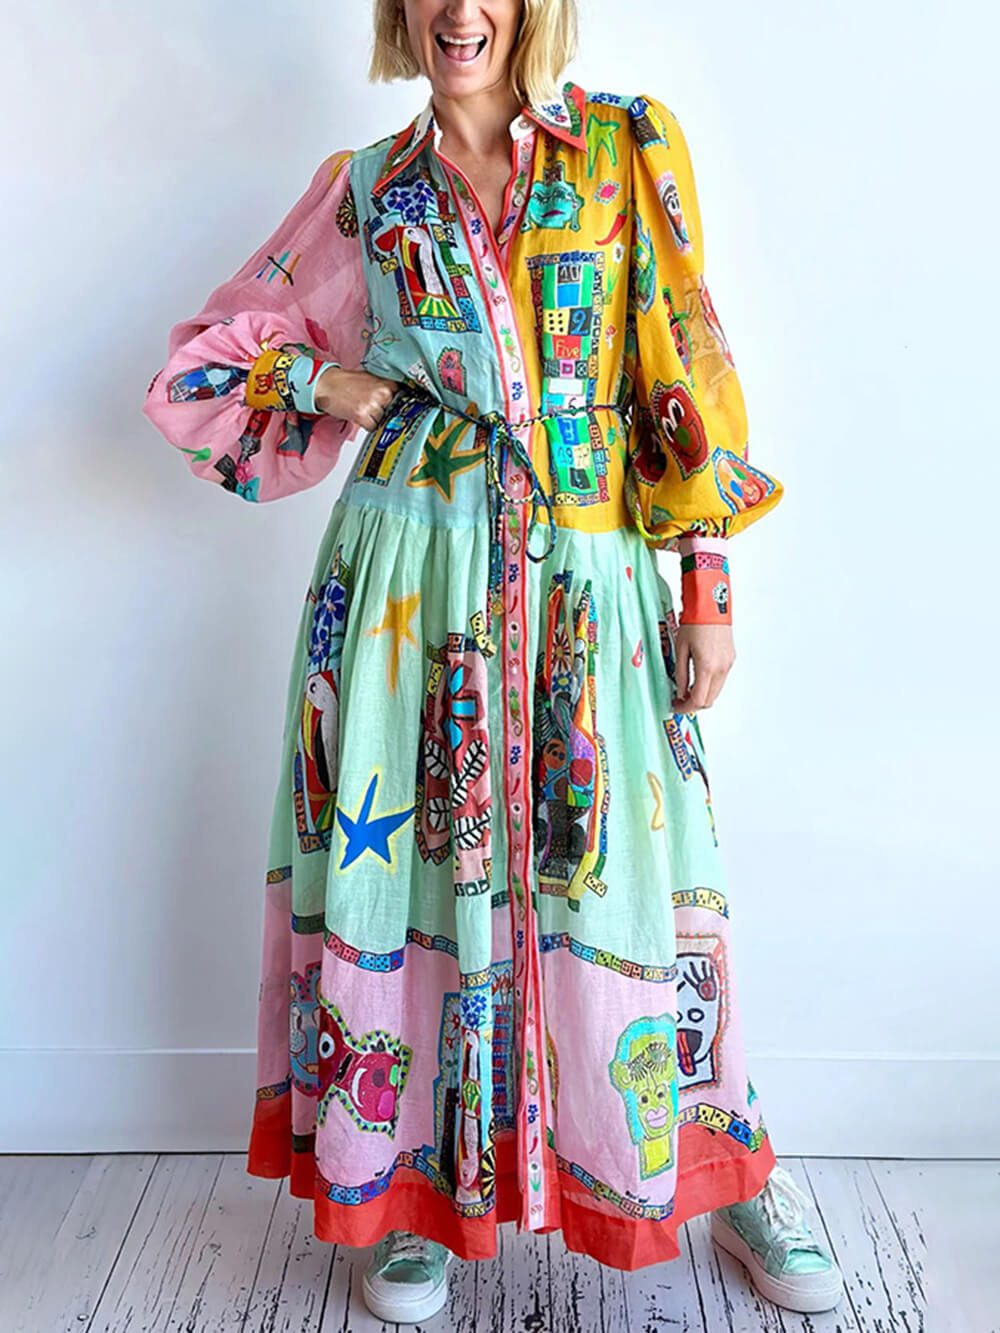 ชุดเดรส Midi Dress เสื้อเชิ้ตแขนบอลลูนพิมพ์ลาย Colorblock ที่ไม่ซ้ำใคร